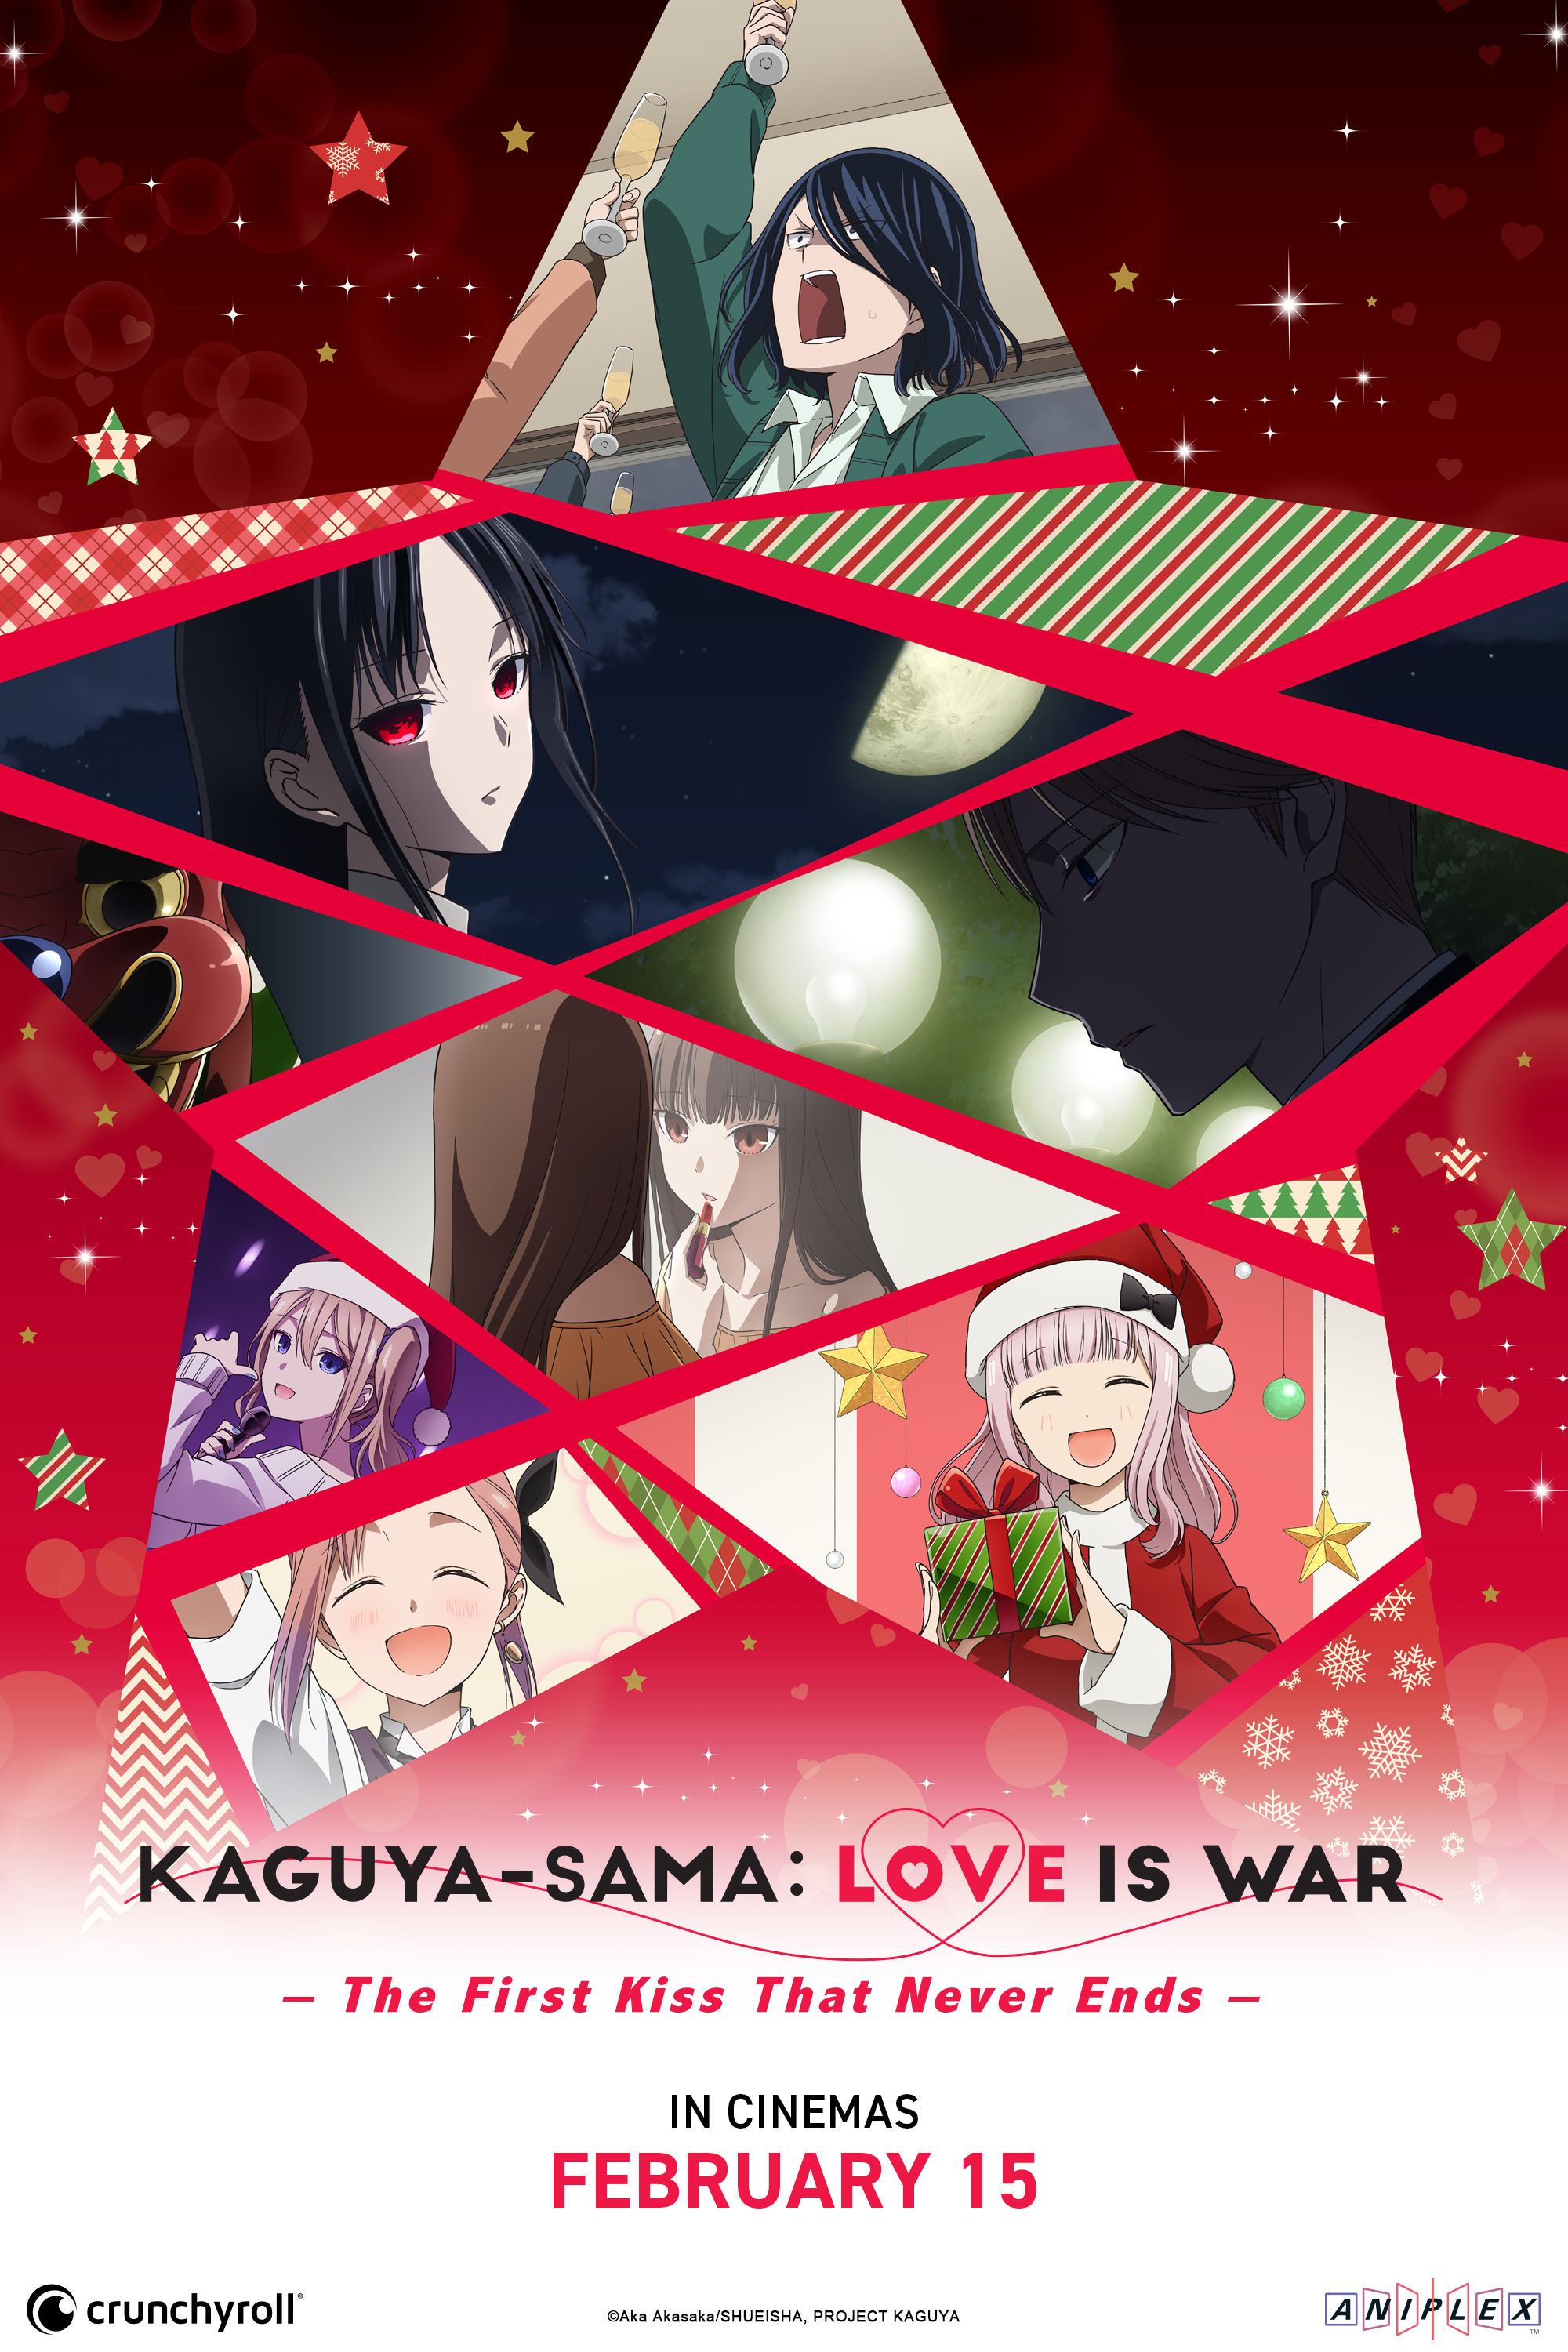 L'amour kaguya-sama est la guerre